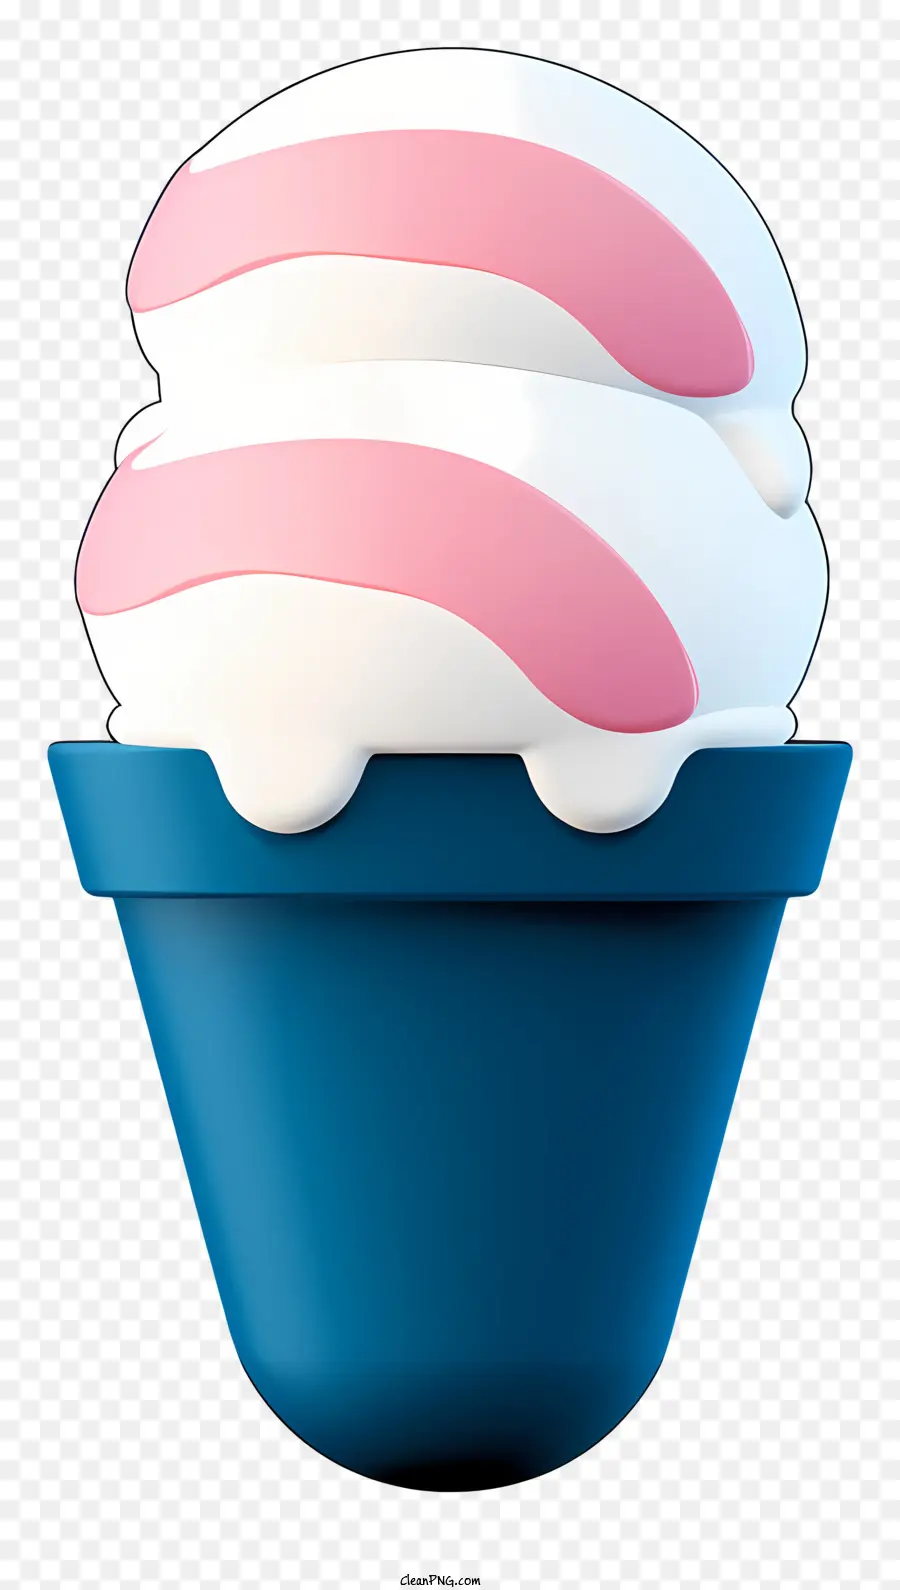 cono di gelato rosa cucchiaio panna montata a strisce blu piatto rotondo cono gelato rotondo - Cono di gelato rosa con panna montata e cucchiaio